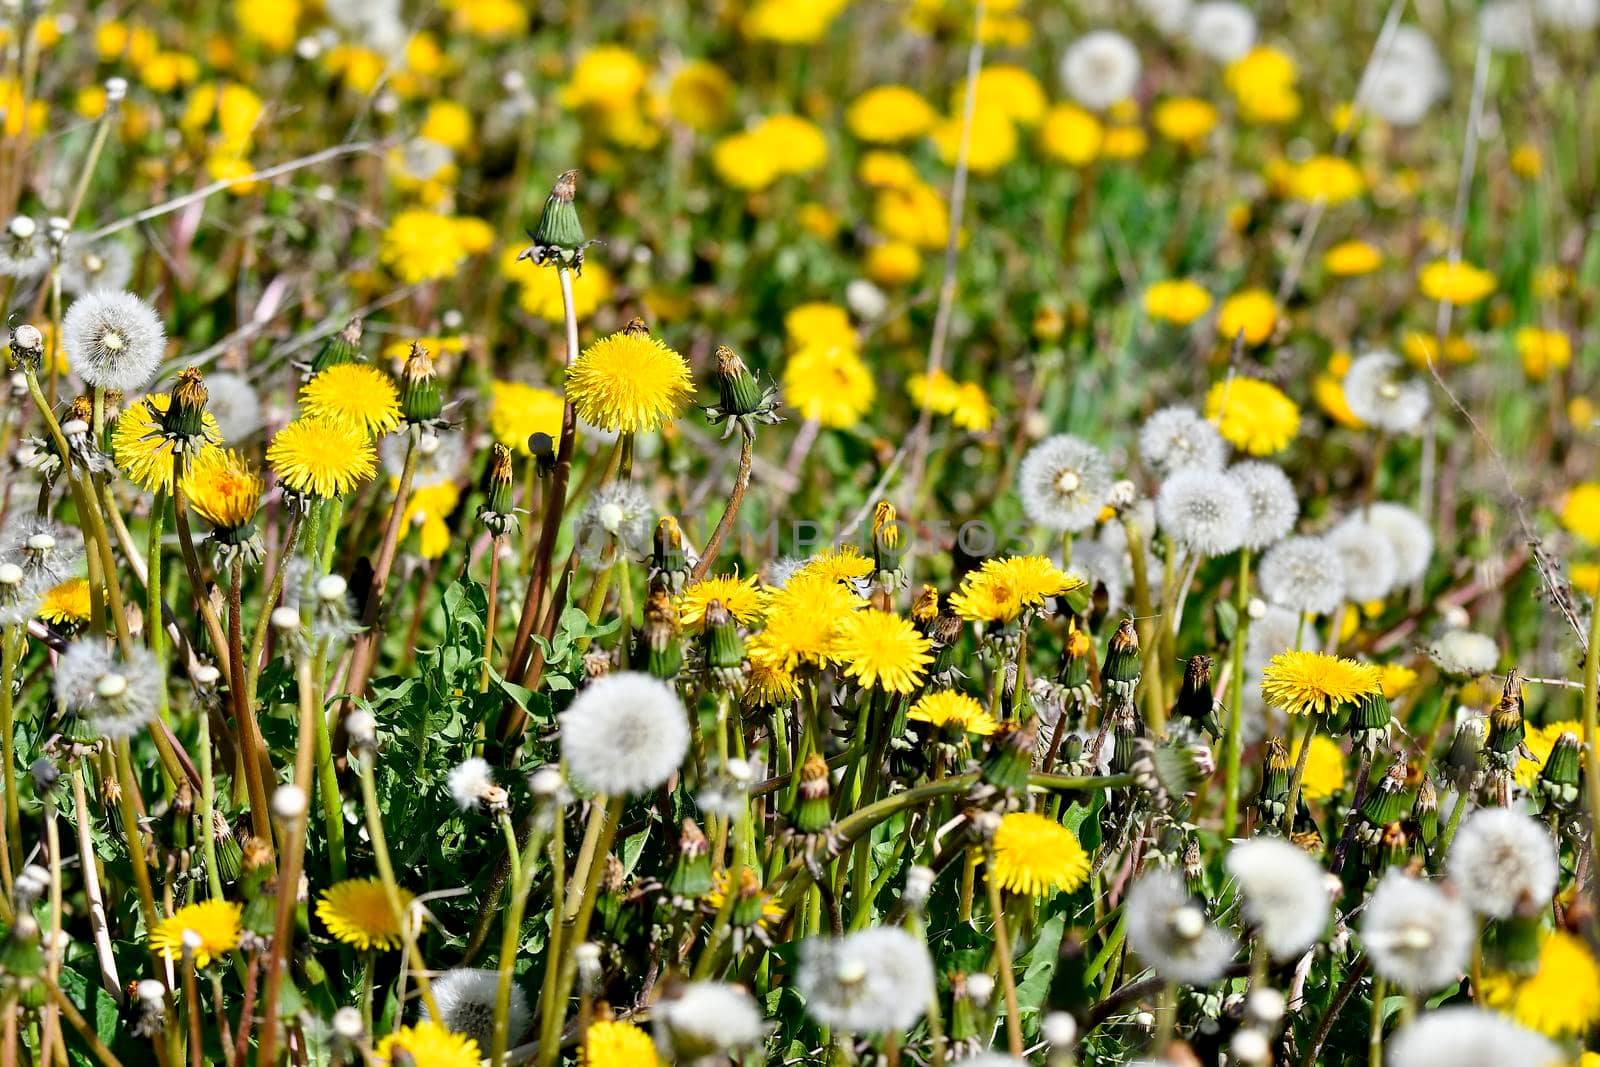 meadow of dandelion flowers in spring in Germany by Jochen